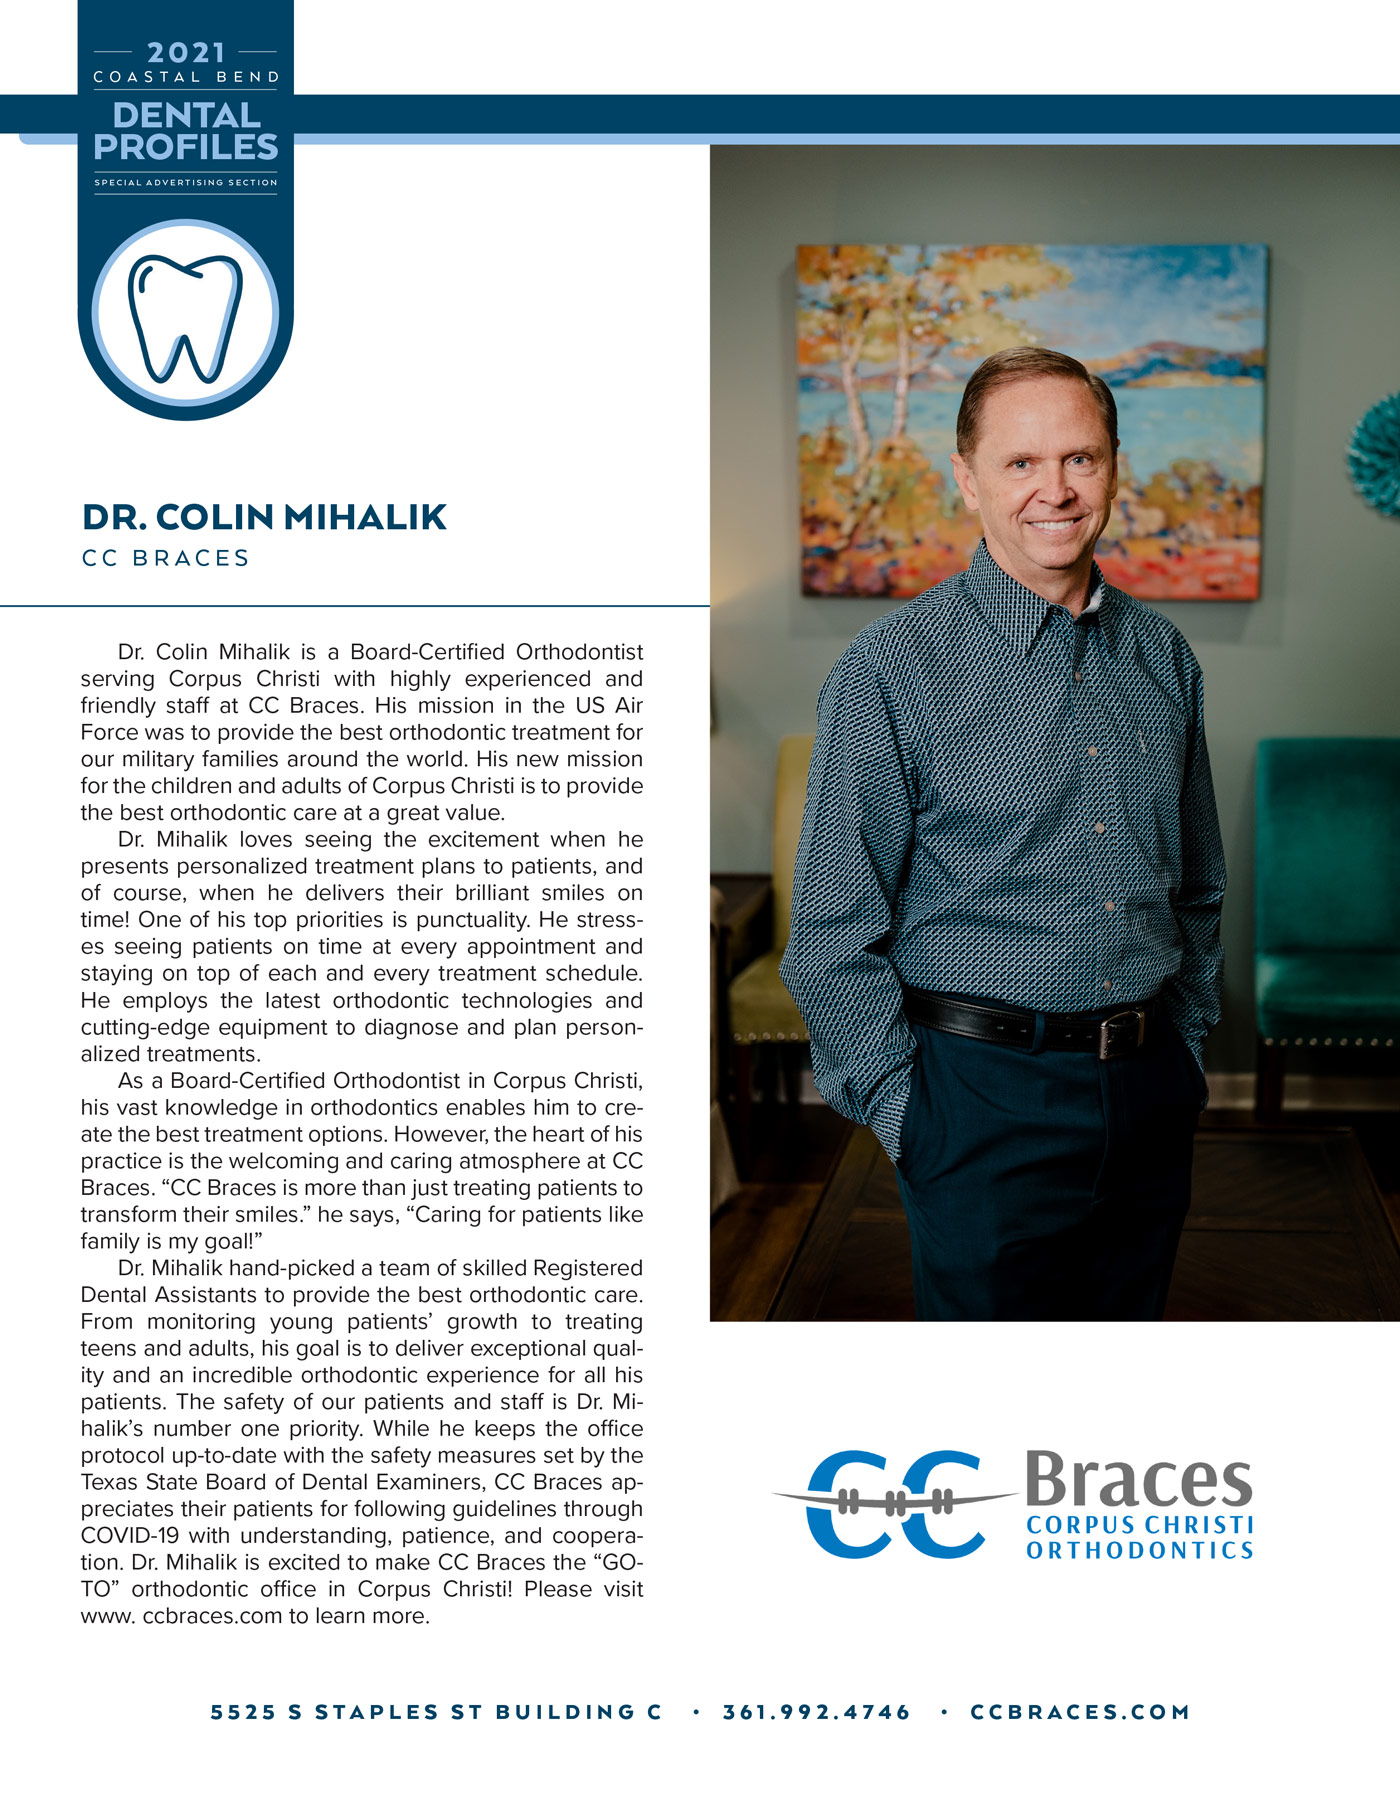 Dr. Colin Mihalik Dental Profile!